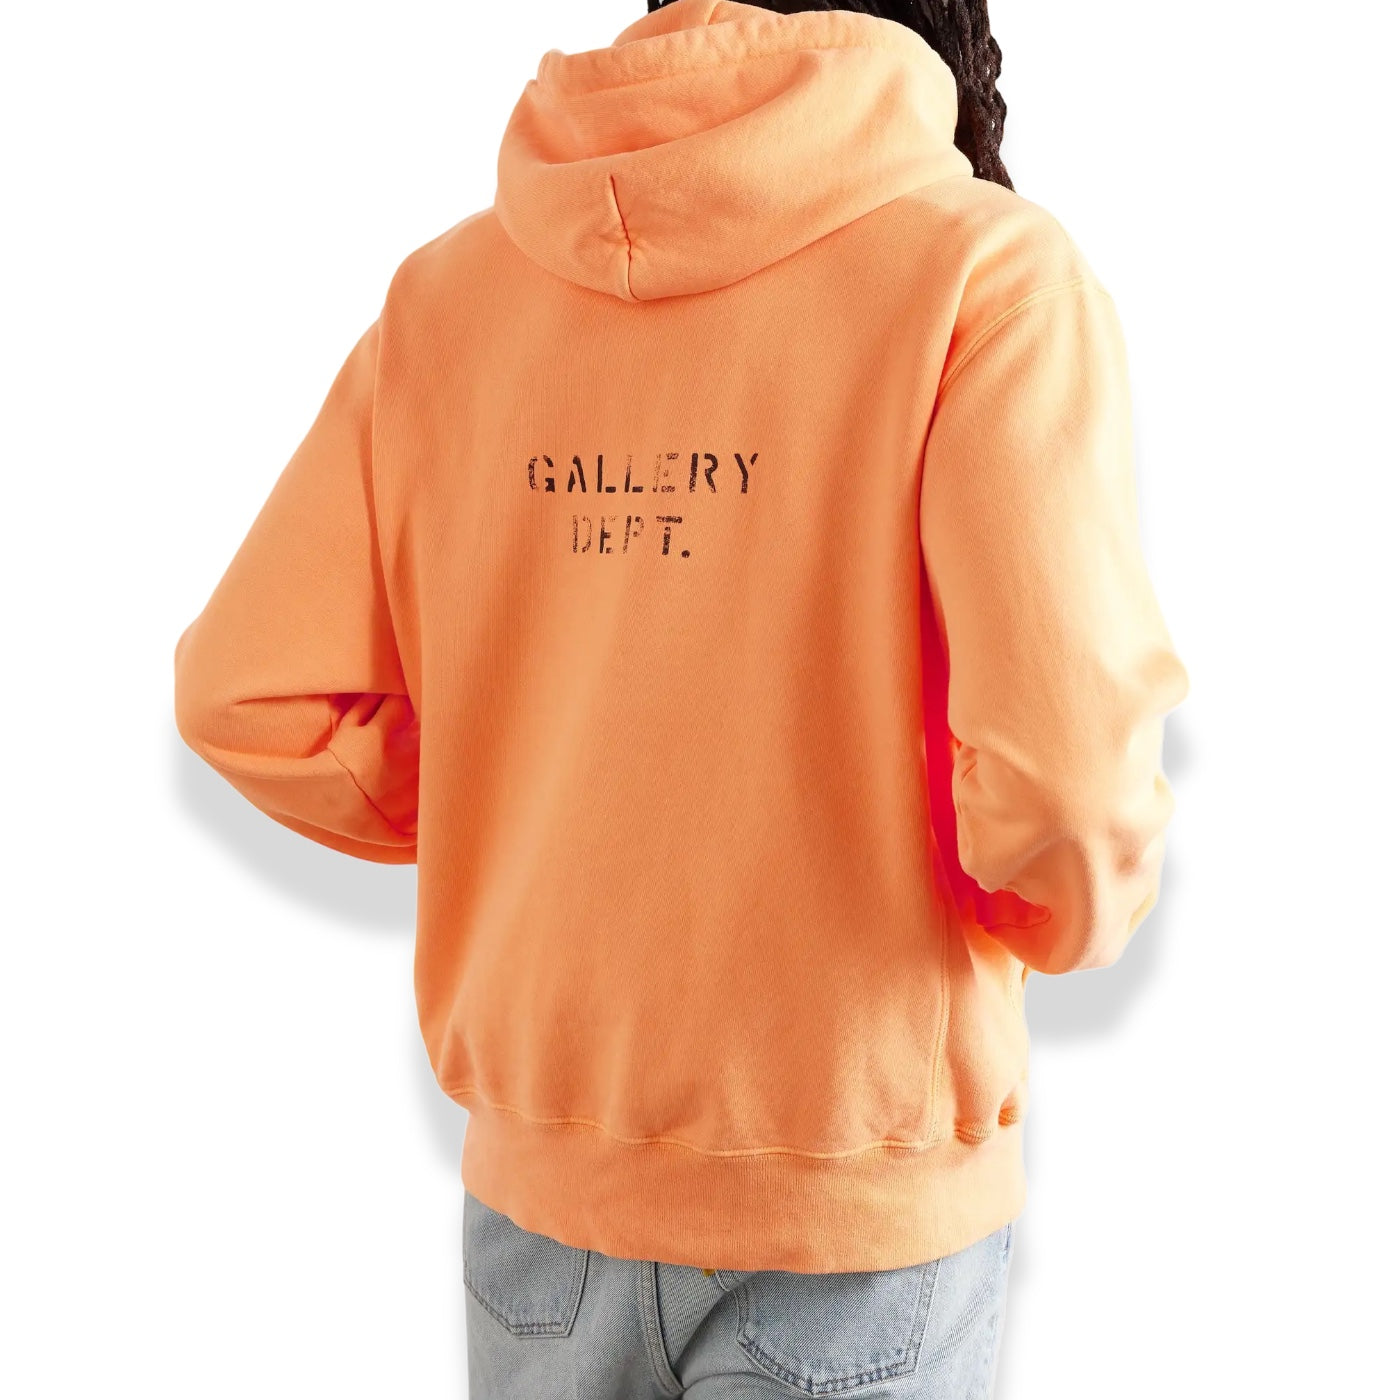 Gallery Dept. - Logo hoodie Orange